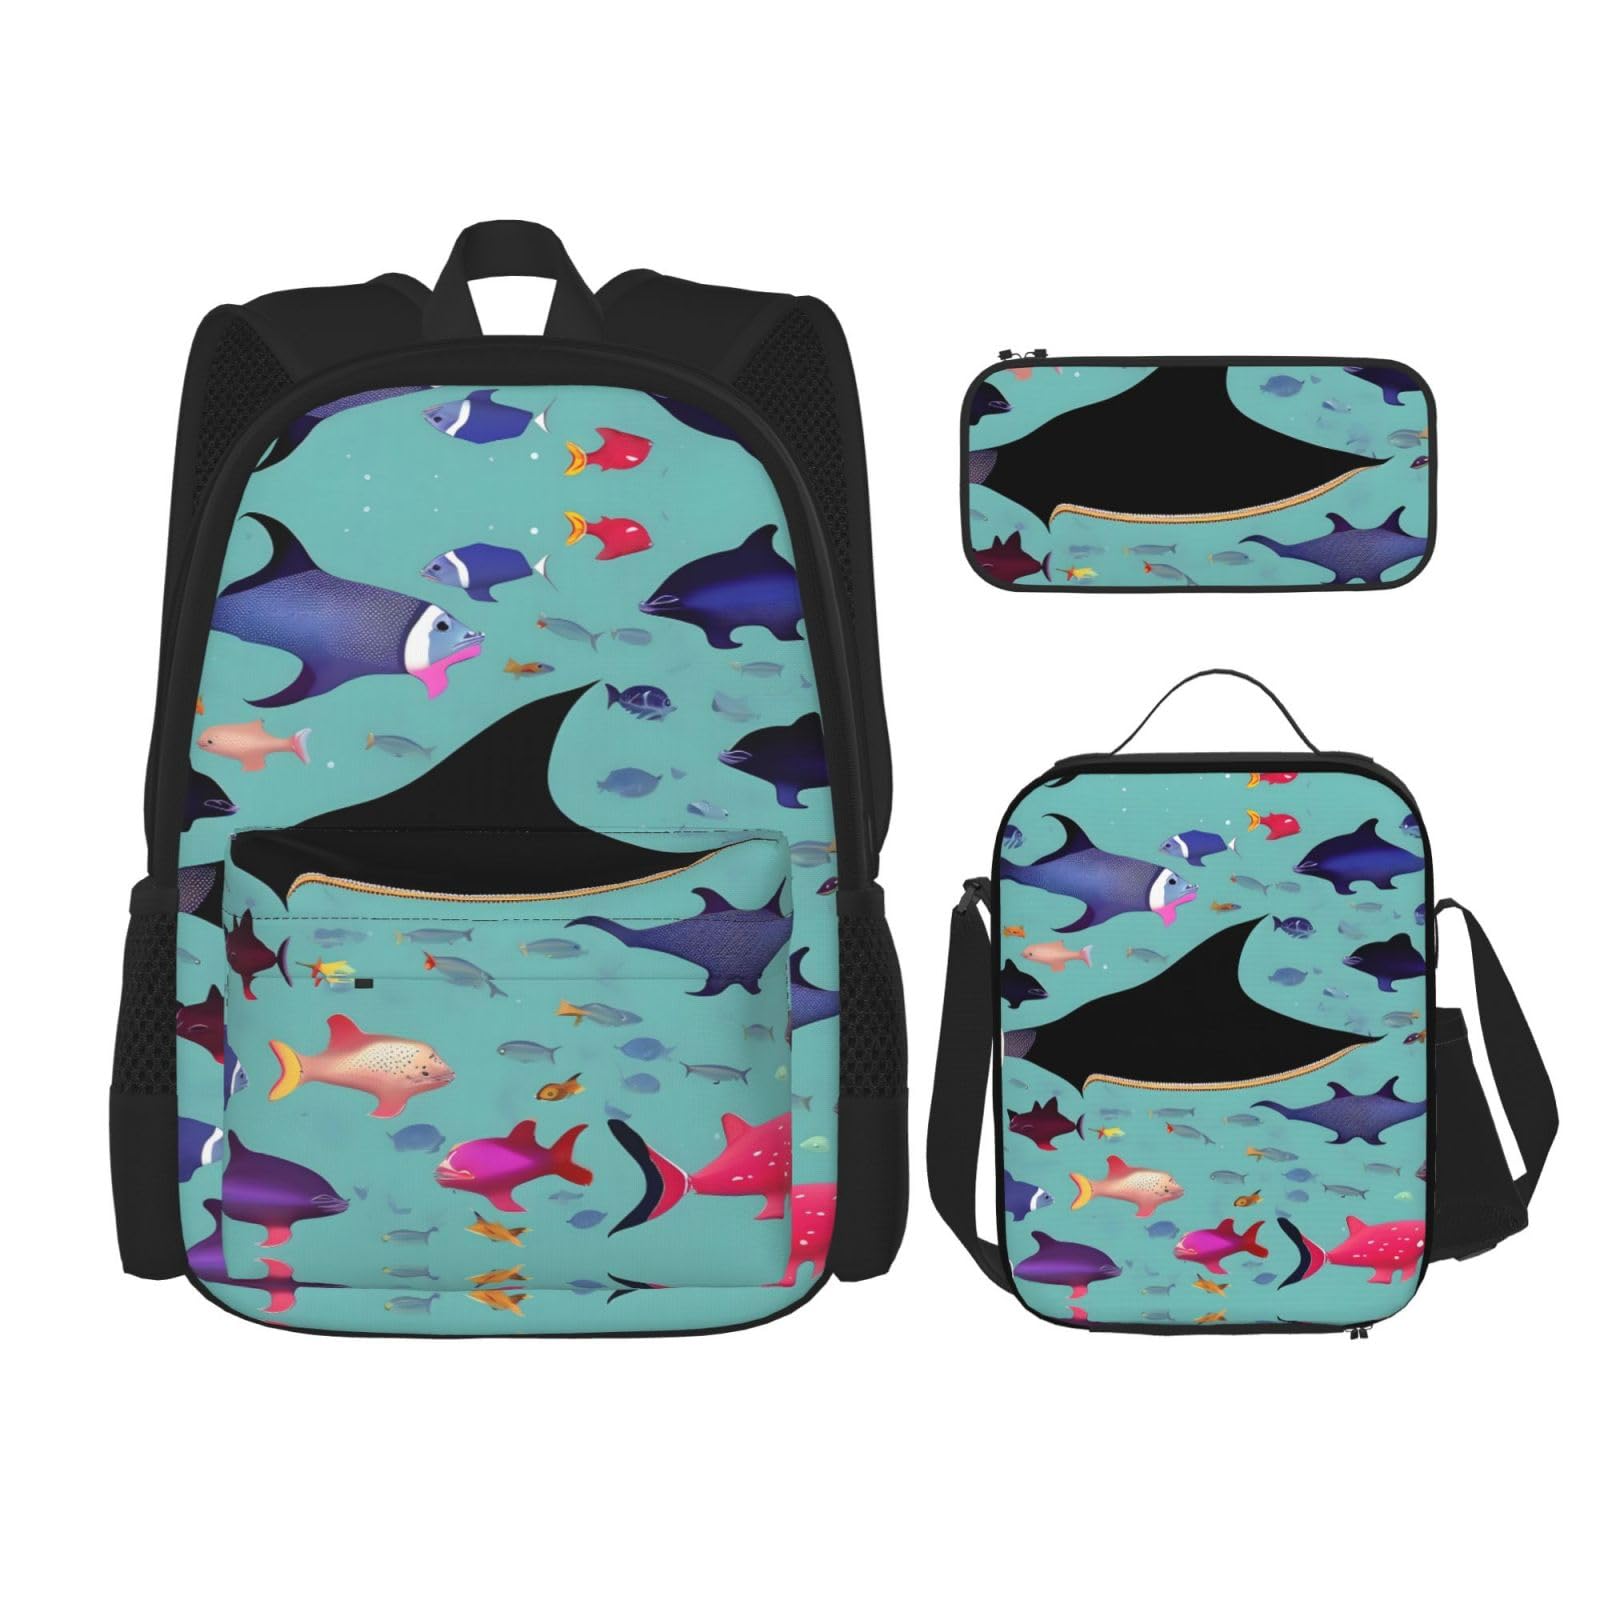 送料無料NEZIH Manta Ray and Fish Backpack Travel Daypack With Lunch Box Pencil Bag 3 Pcs Set Casual Rucksack Fashion Back